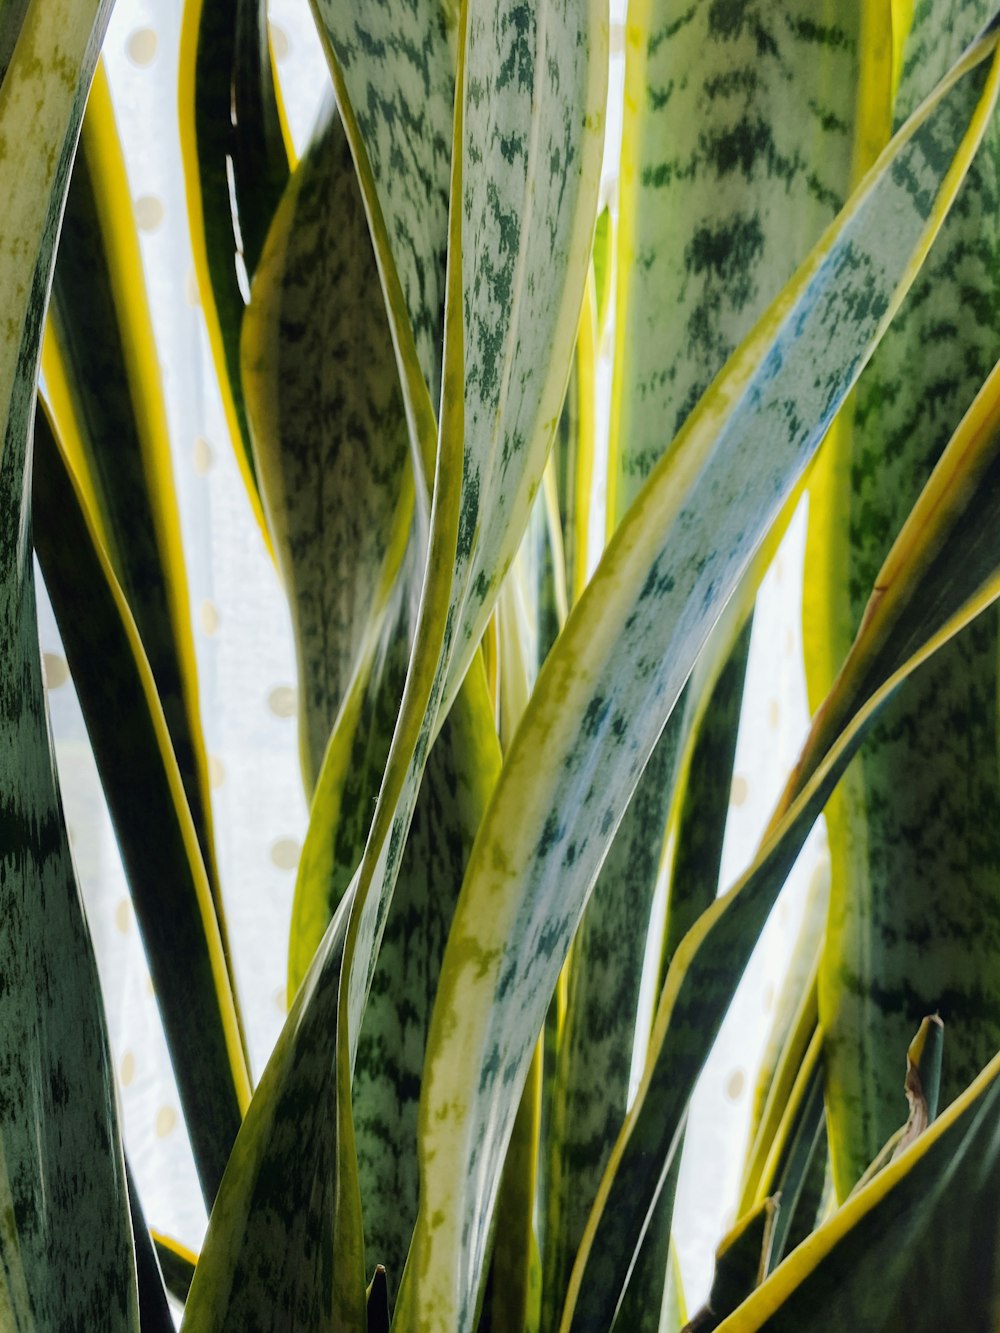 pianta verde e gialla vicino allo specchio d'acqua durante il giorno